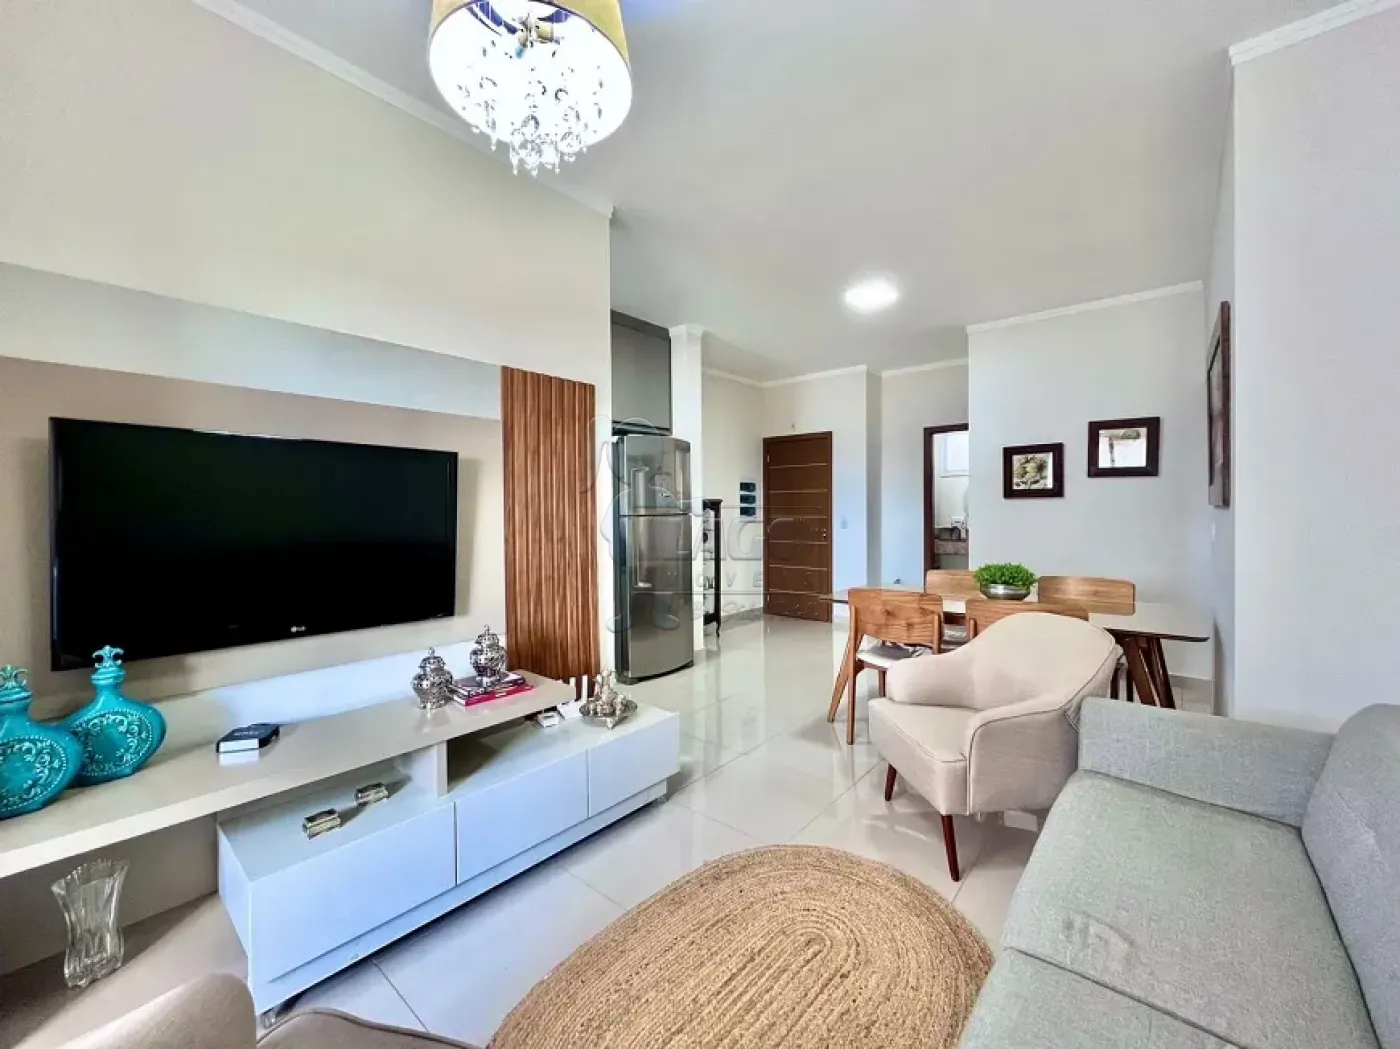 Comprar Apartamento / Padrão em Ribeirão Preto R$ 550.000,00 - Foto 1